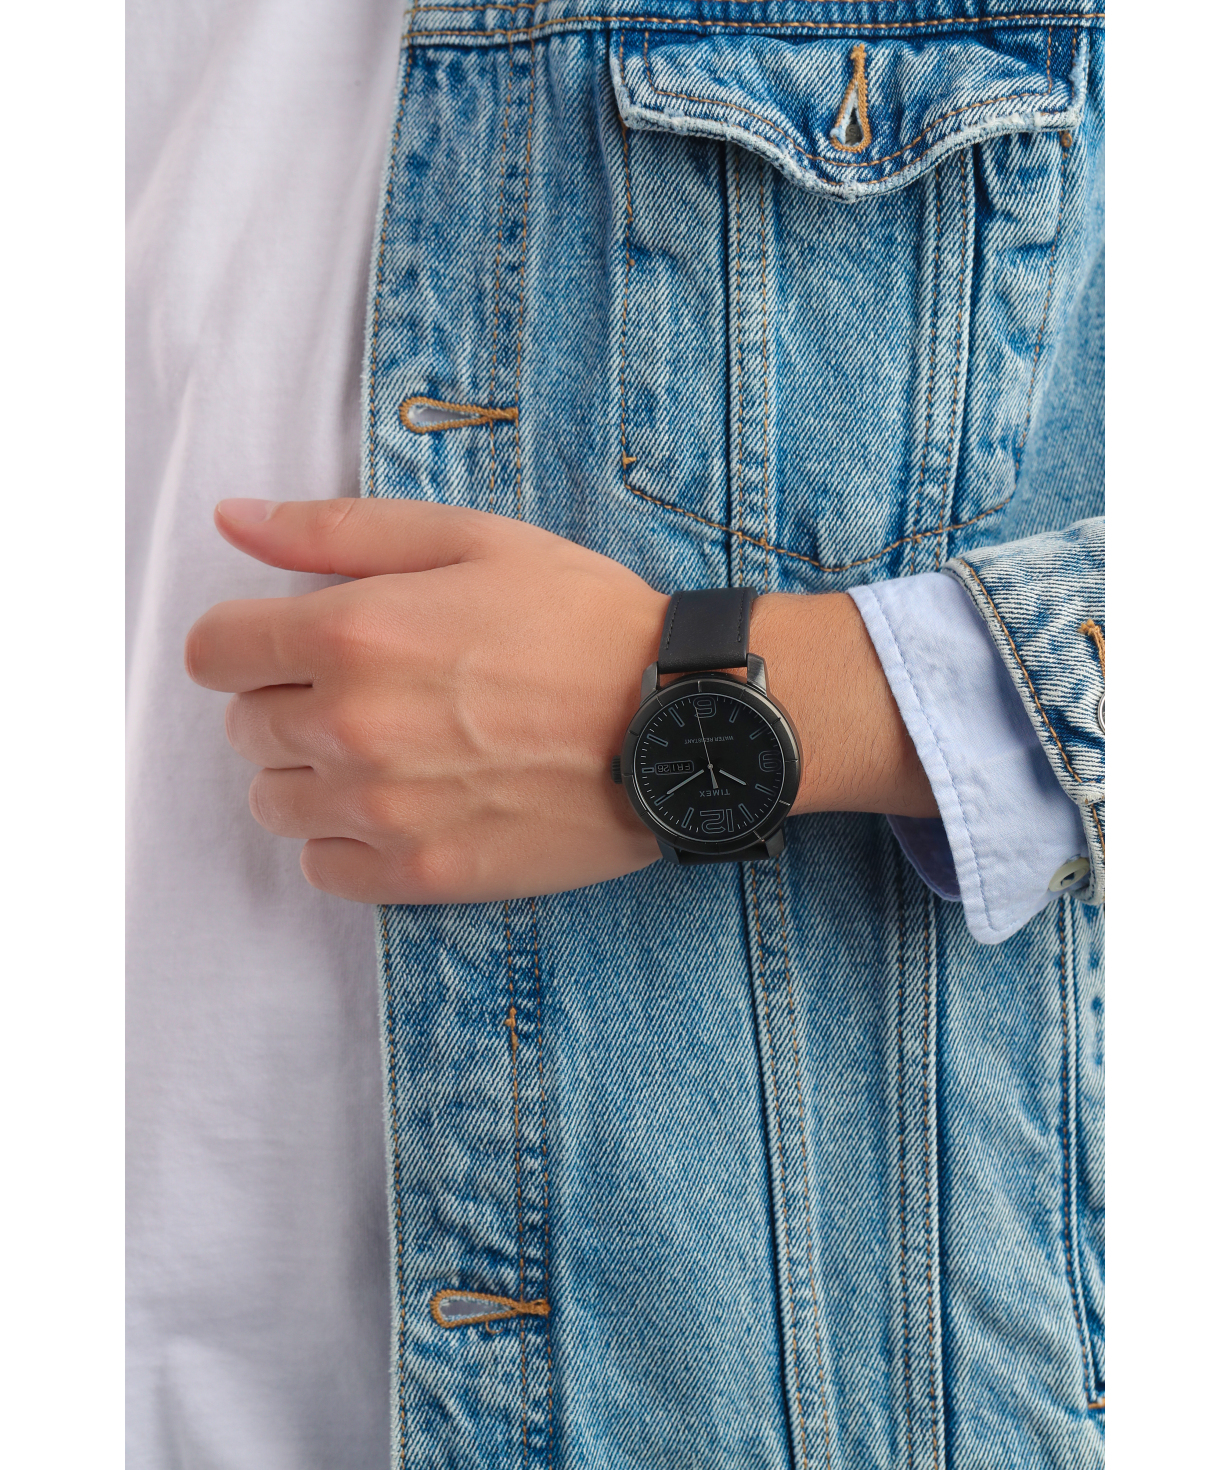 Ժամացույց «Timex» ձեռքի TW2R64300